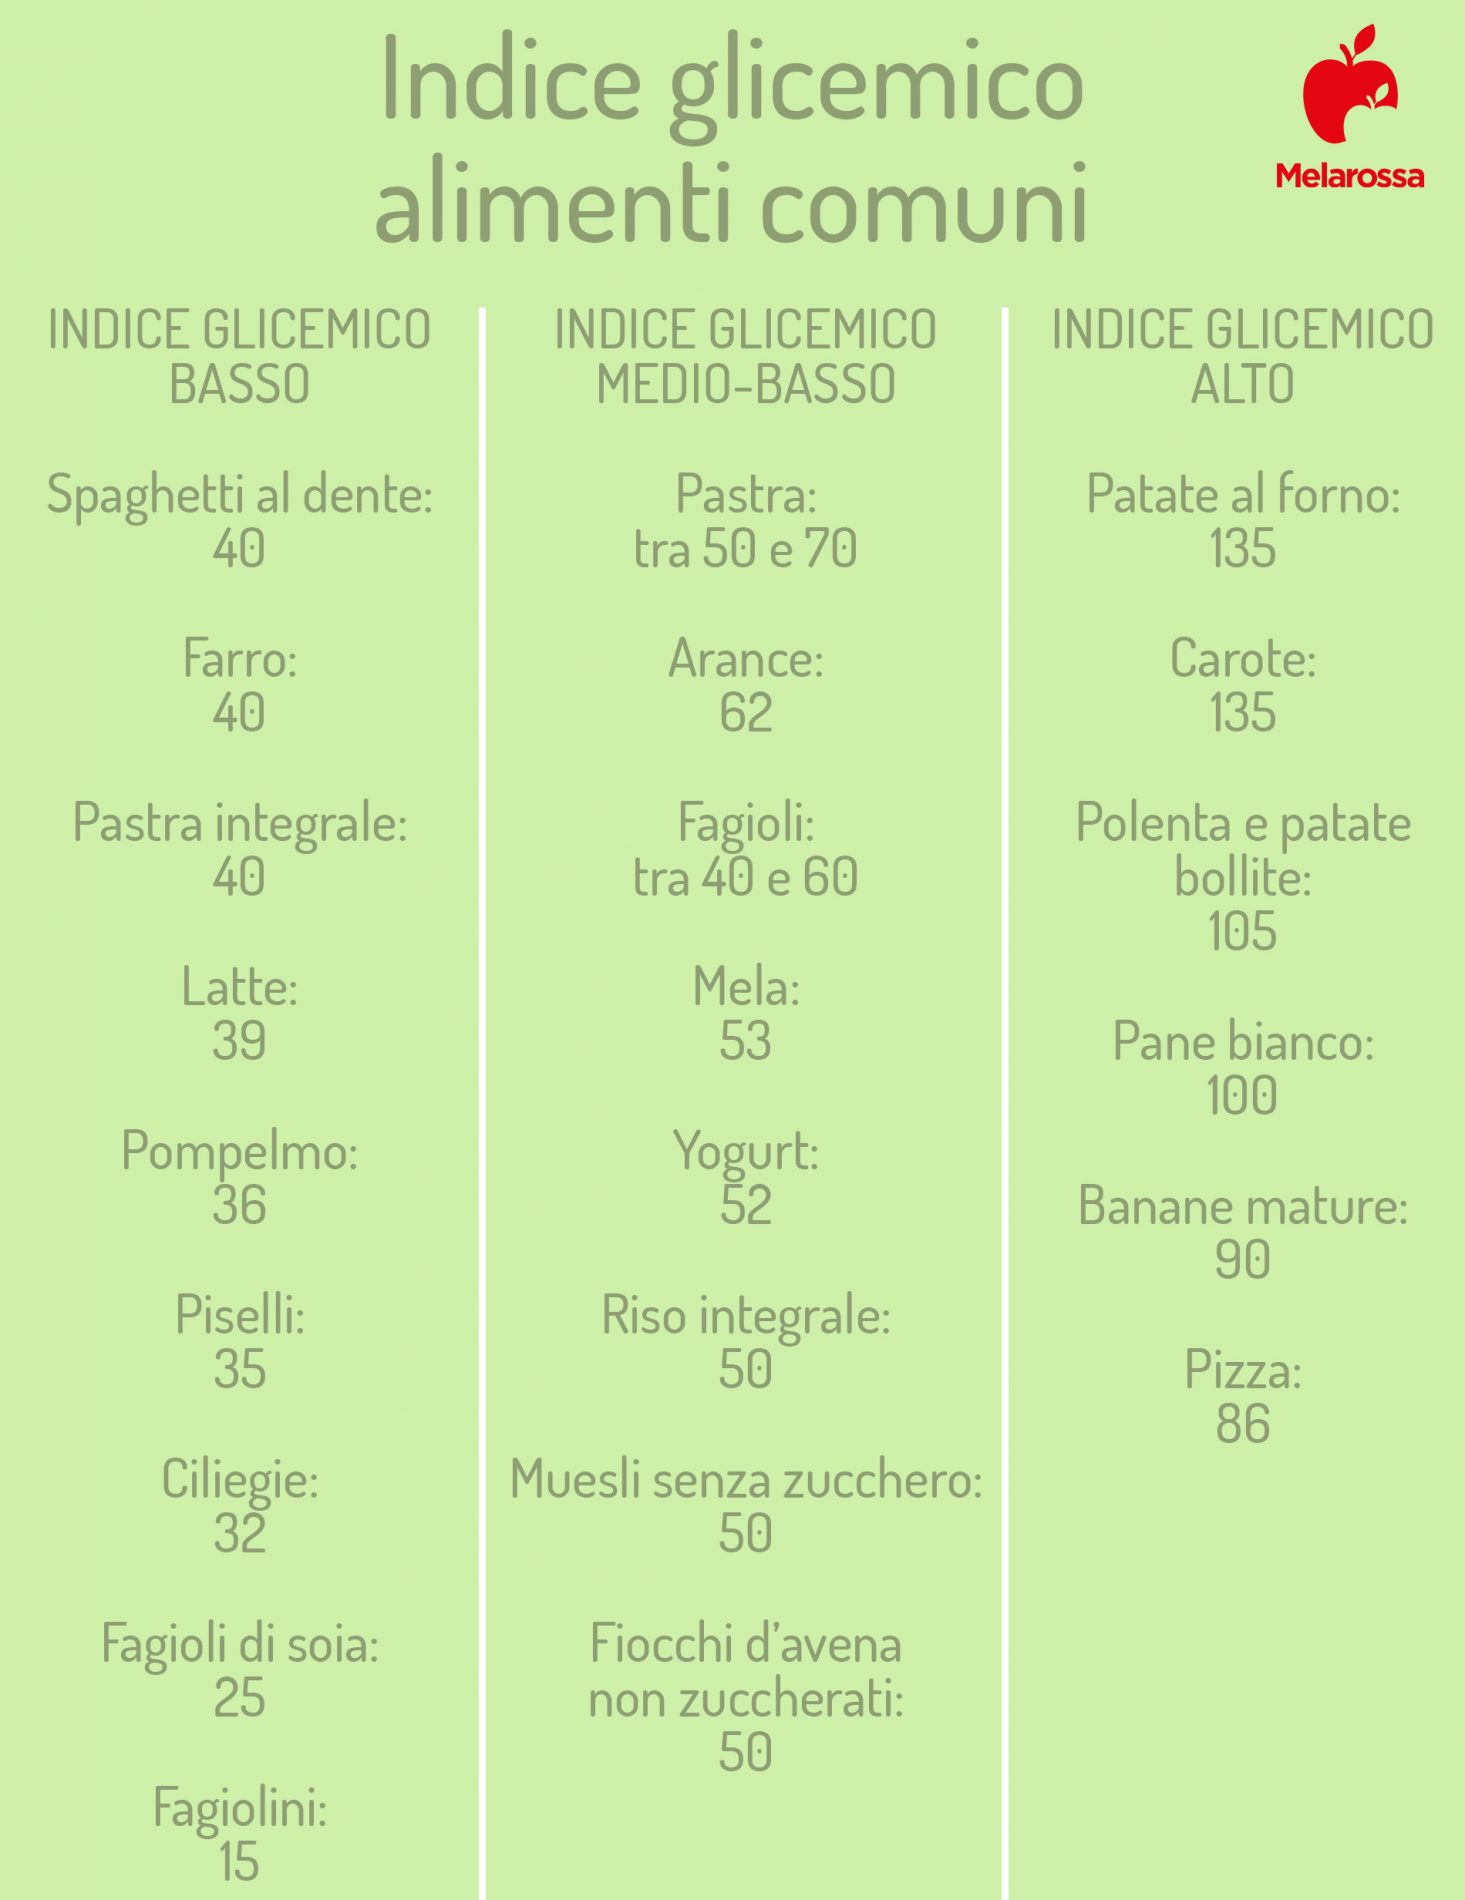 Carboidrati: tabella indice glicemico cibi comuni